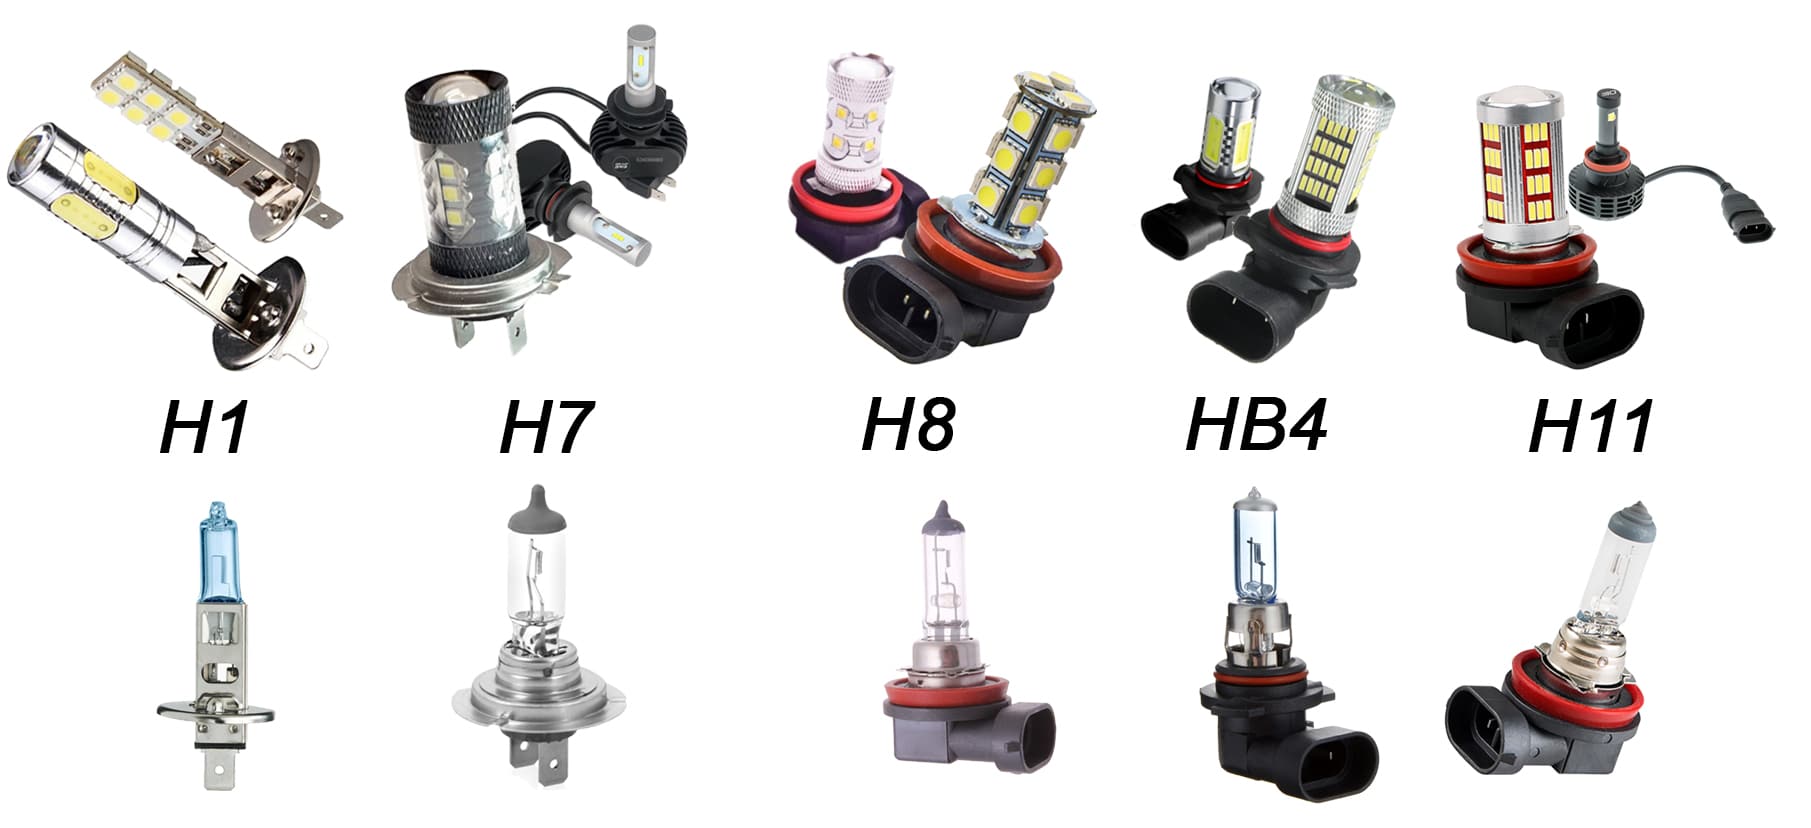 Светодиодные лампы для автомобиля h4: параметры, обзор лучших моделей